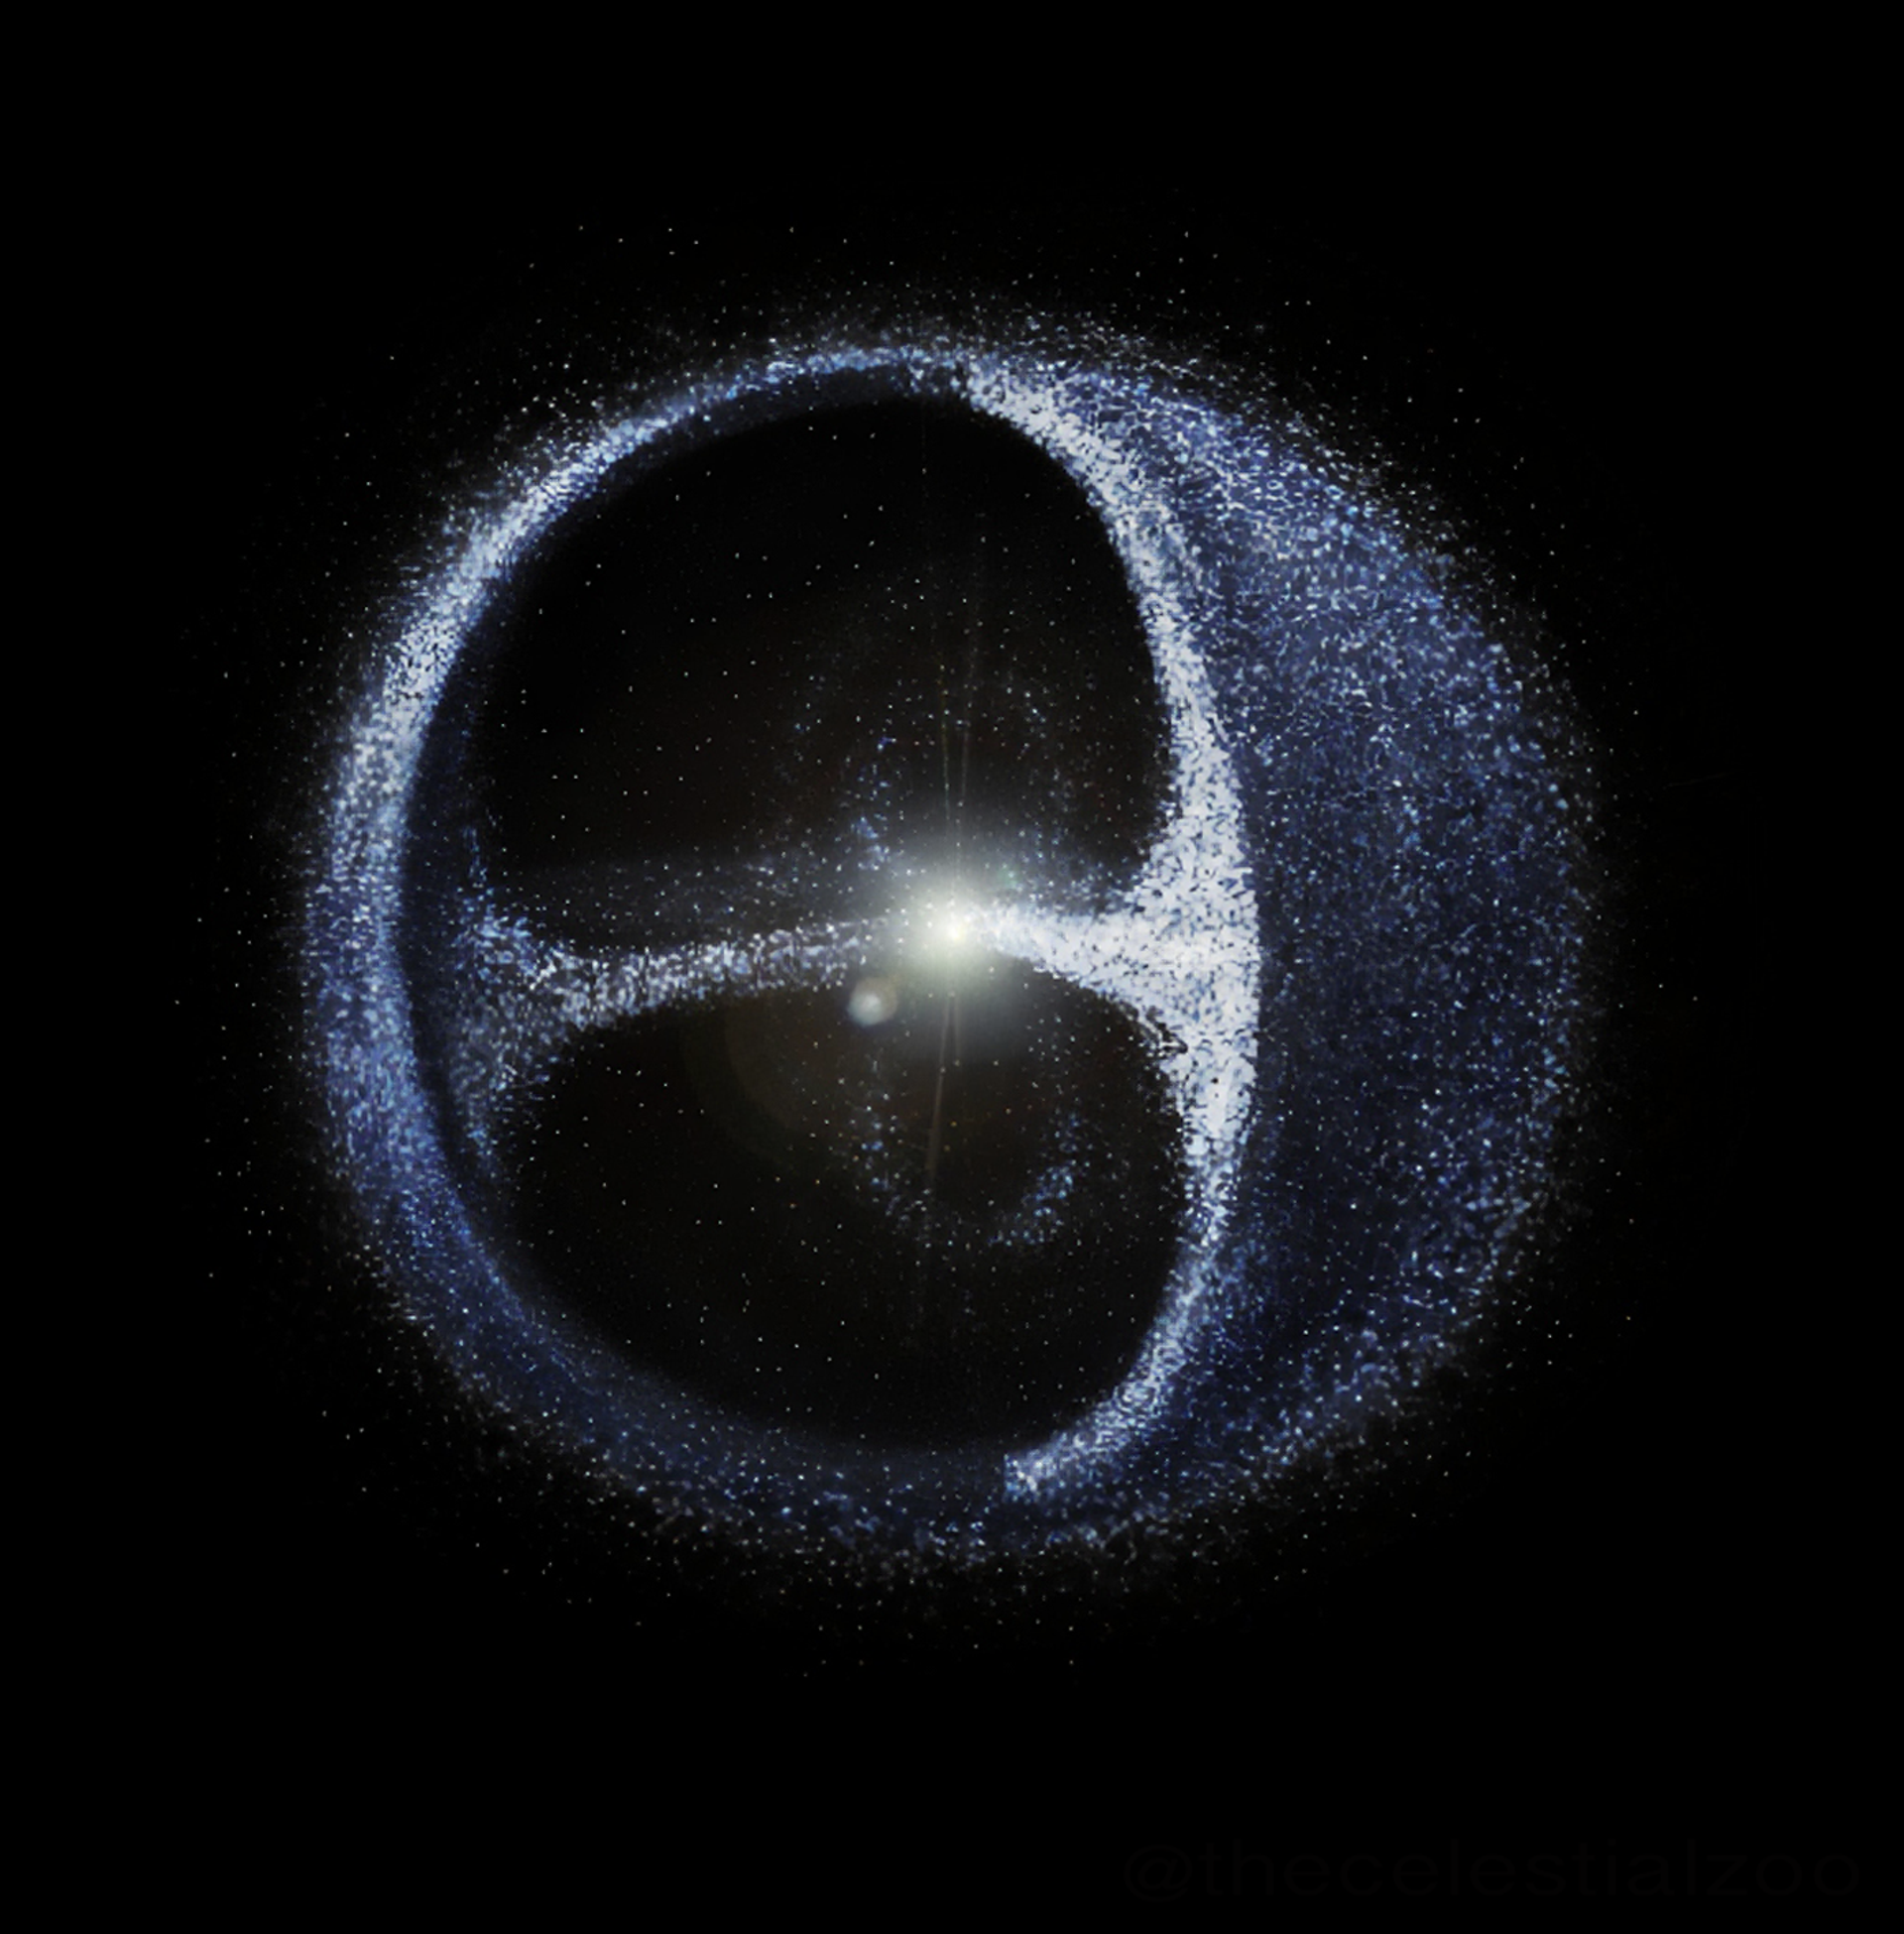 Nuvem de Oort pode conter 100 trilhões de objetos interestelares, revela novo estudo - Sputnik Brasil, 1920, 25.08.2021